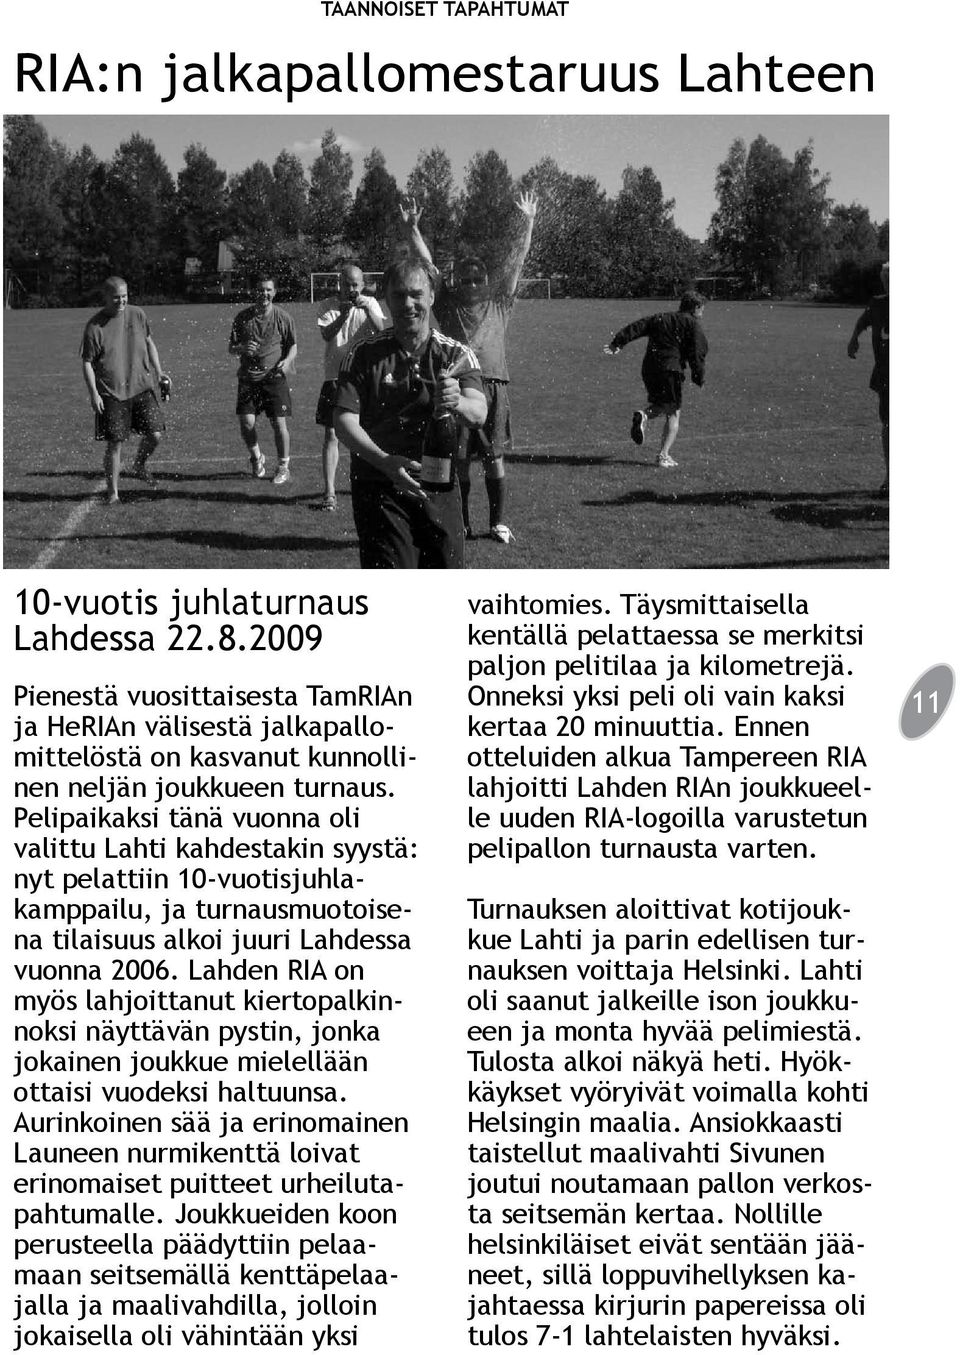 Pelipaikaksi tänä vuonna oli valittu Lahti kahdestakin syystä: nyt pelattiin 10-vuotisjuhlakamppailu, ja turnausmuotoisena tilaisuus alkoi juuri Lahdessa vuonna 2006.